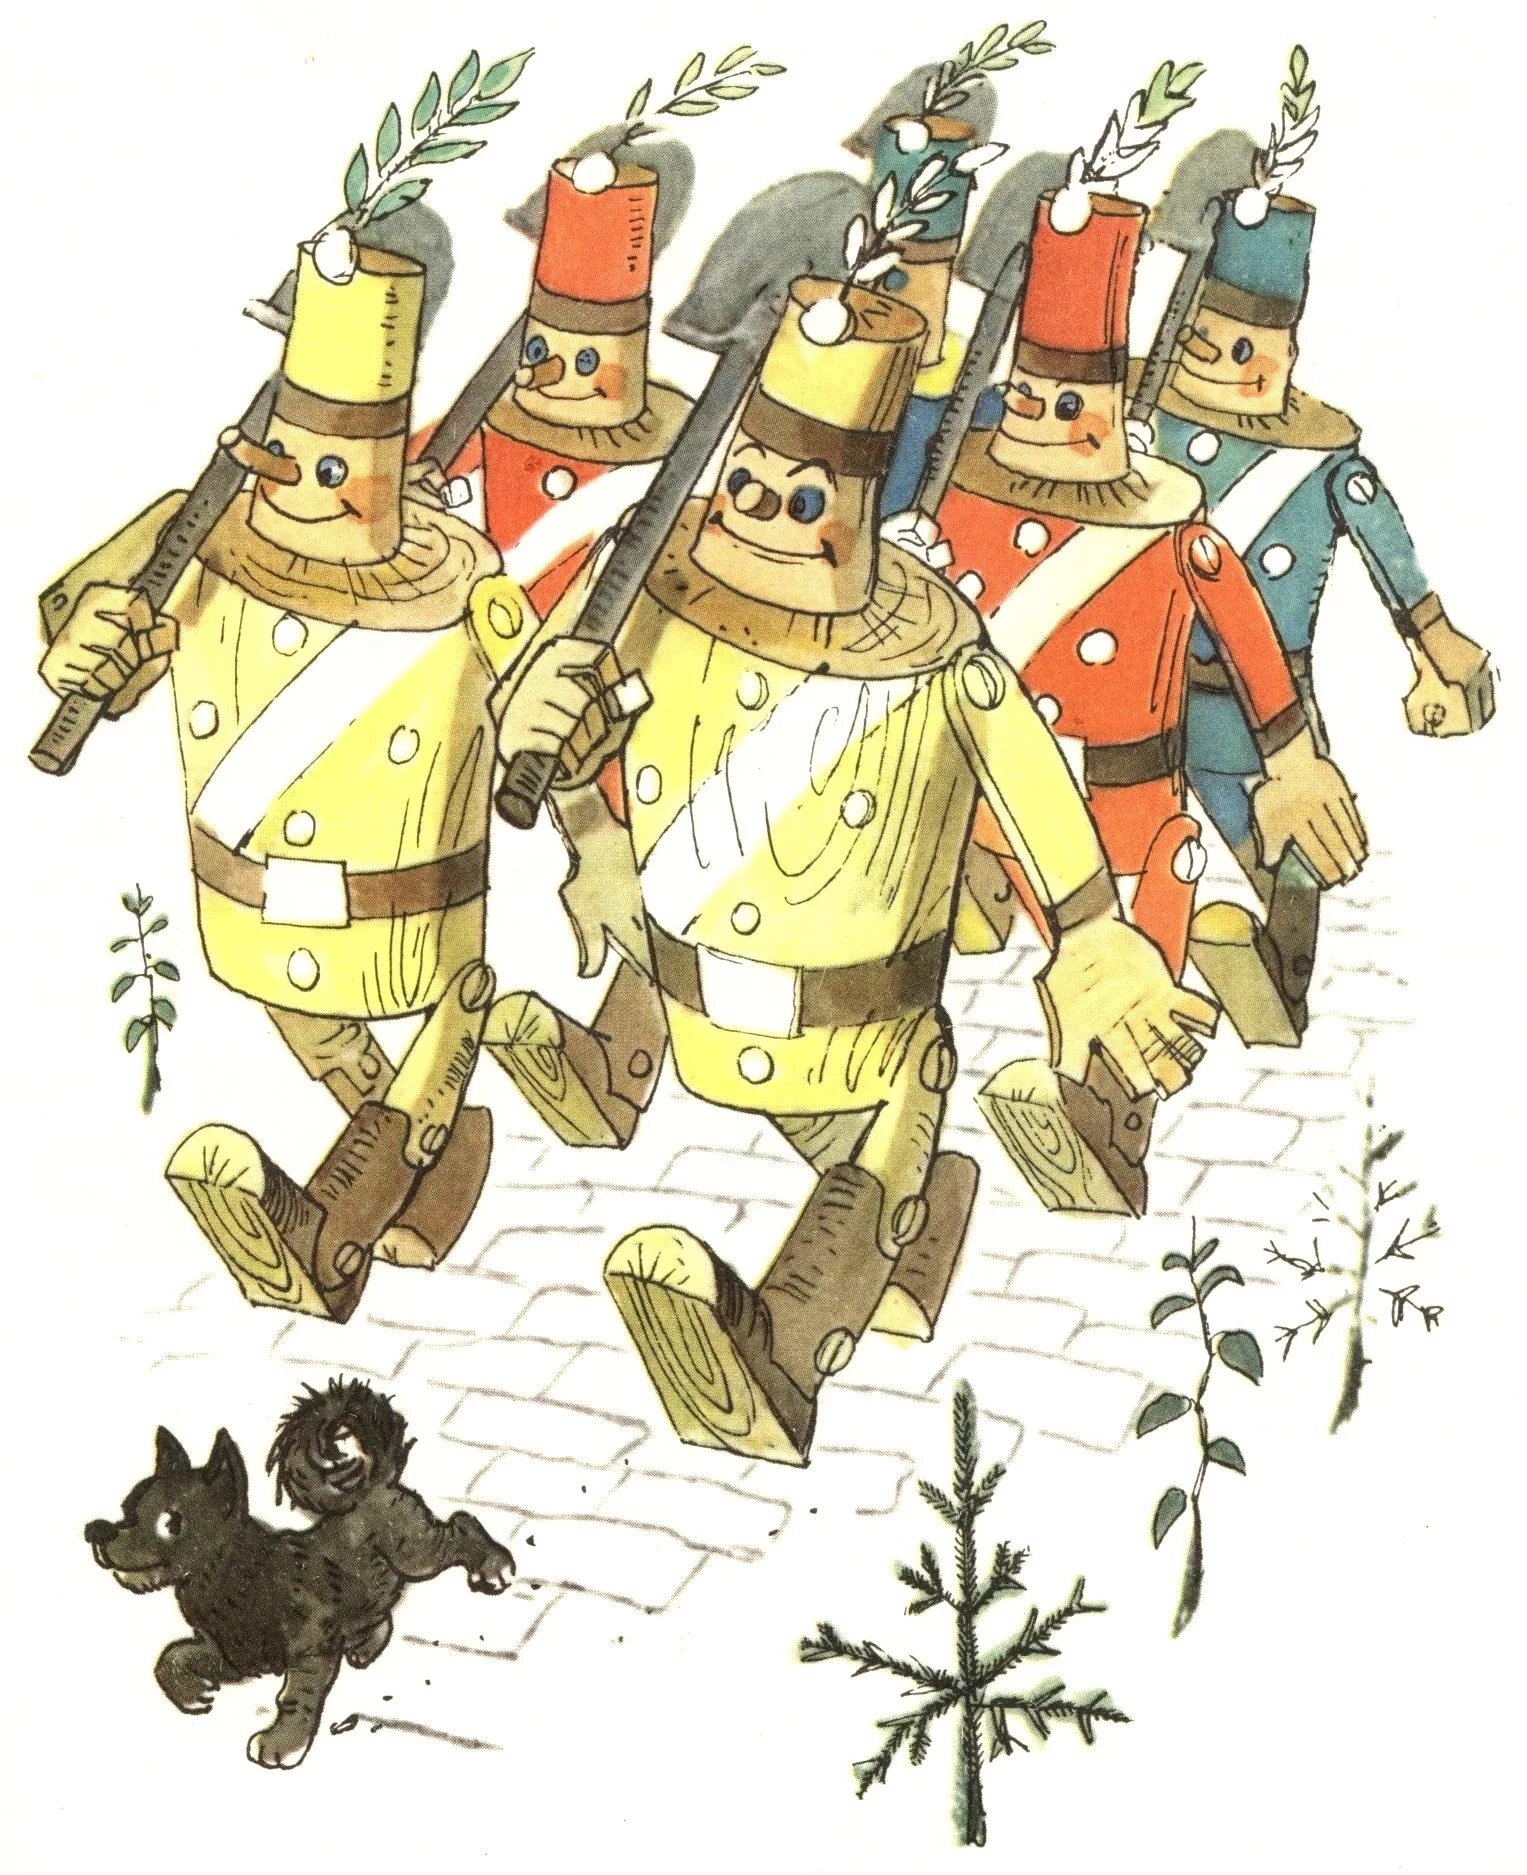 Сказочный джюс. Урфин Джюс и его дуболомы. Урфин Джюс и его деревянные солдаты. Генерал солдат Урфина Джюса. Волков деревянные солдаты Урфина Джюса.